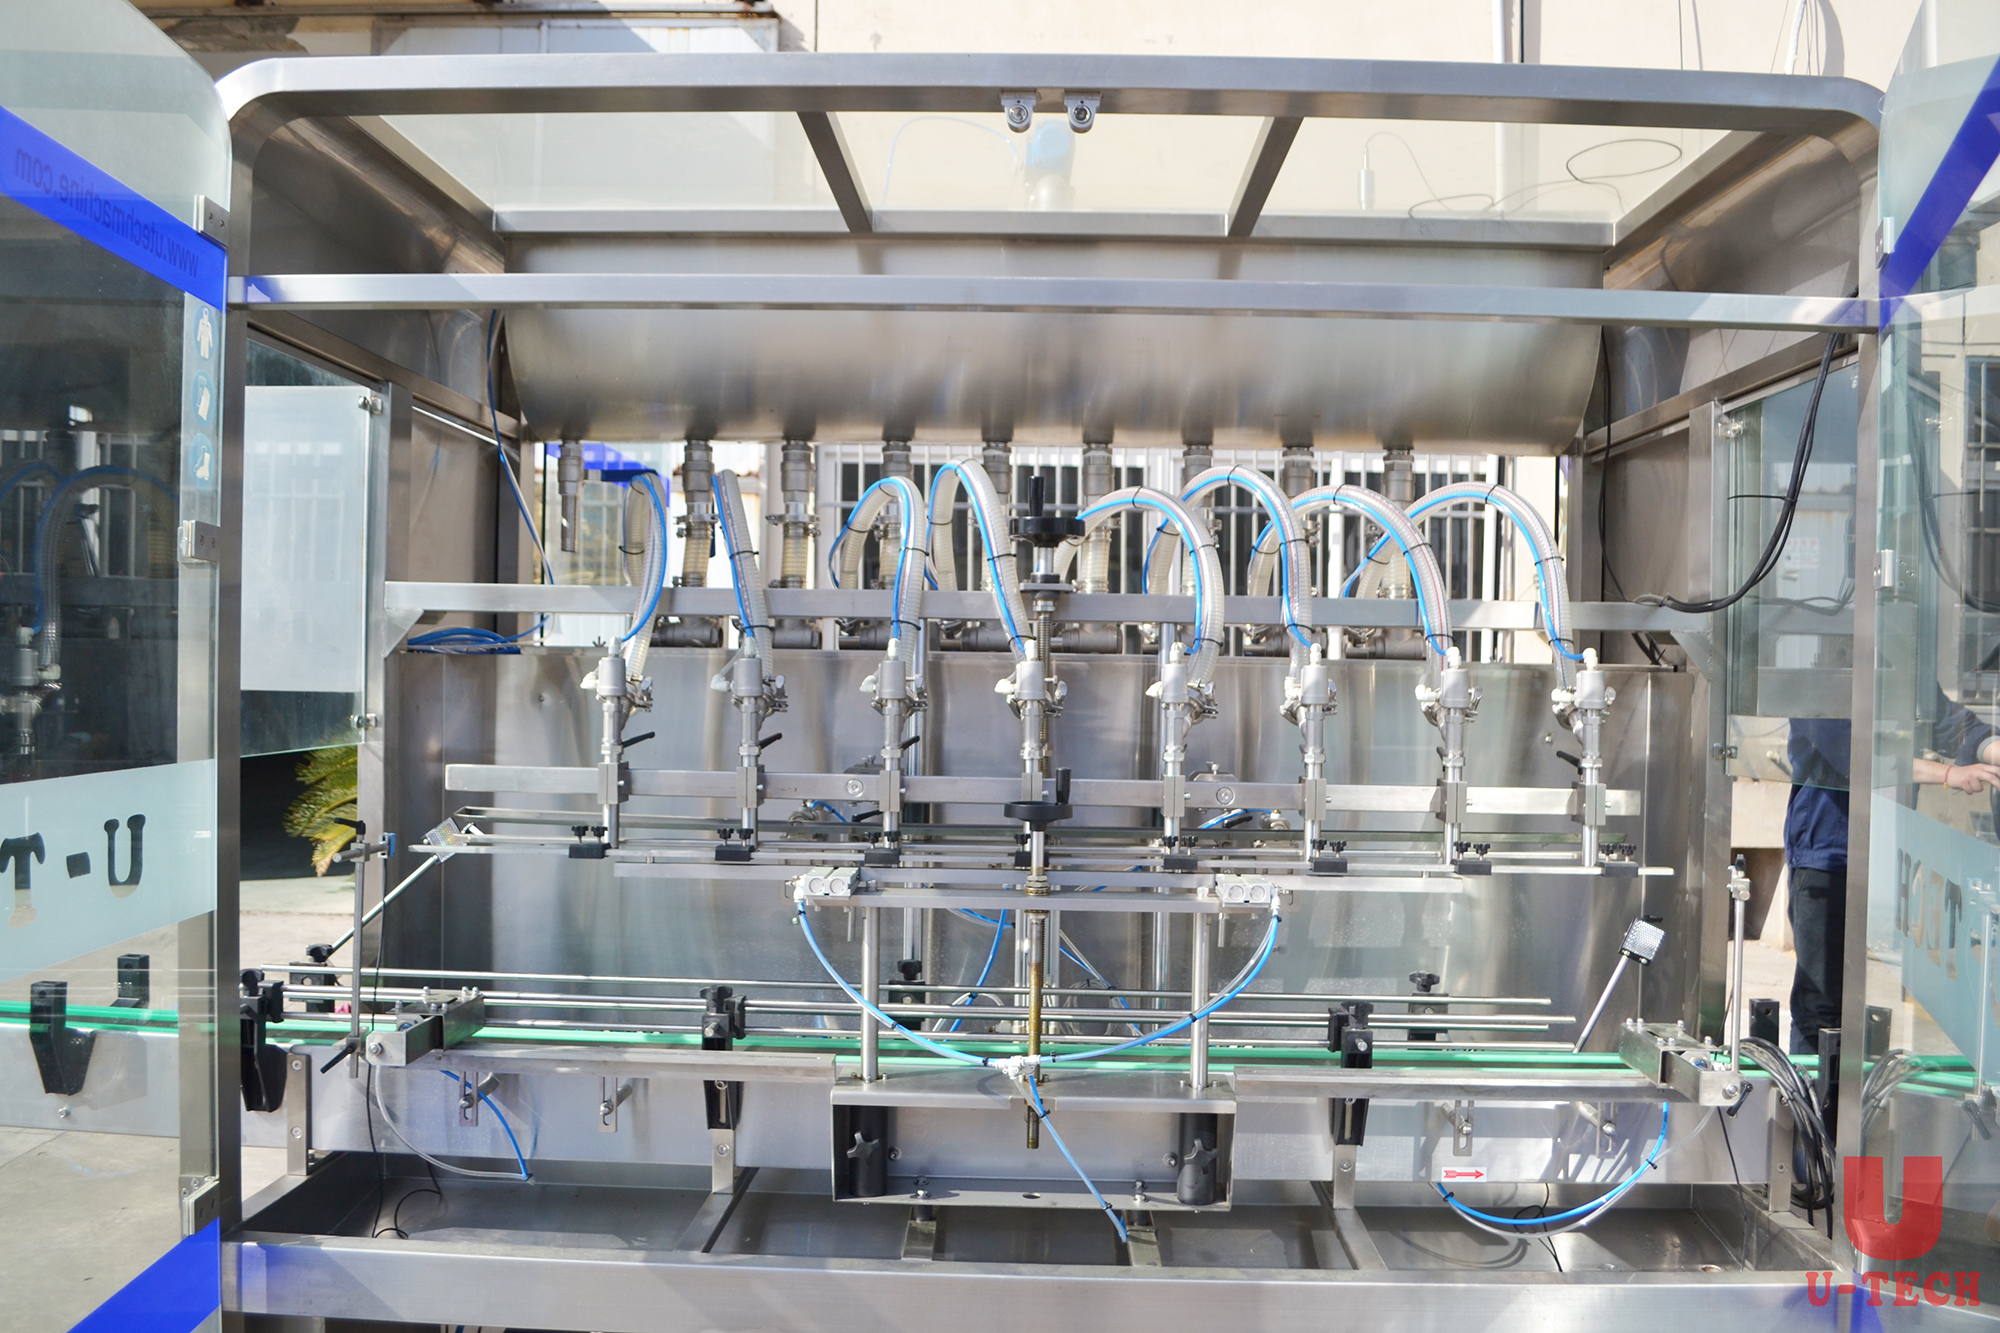 Línea de producción de llenado de desinfectante de manos automatizado Máquinas de etiquetado de taponadoras de llenado en línea de jabón líquido